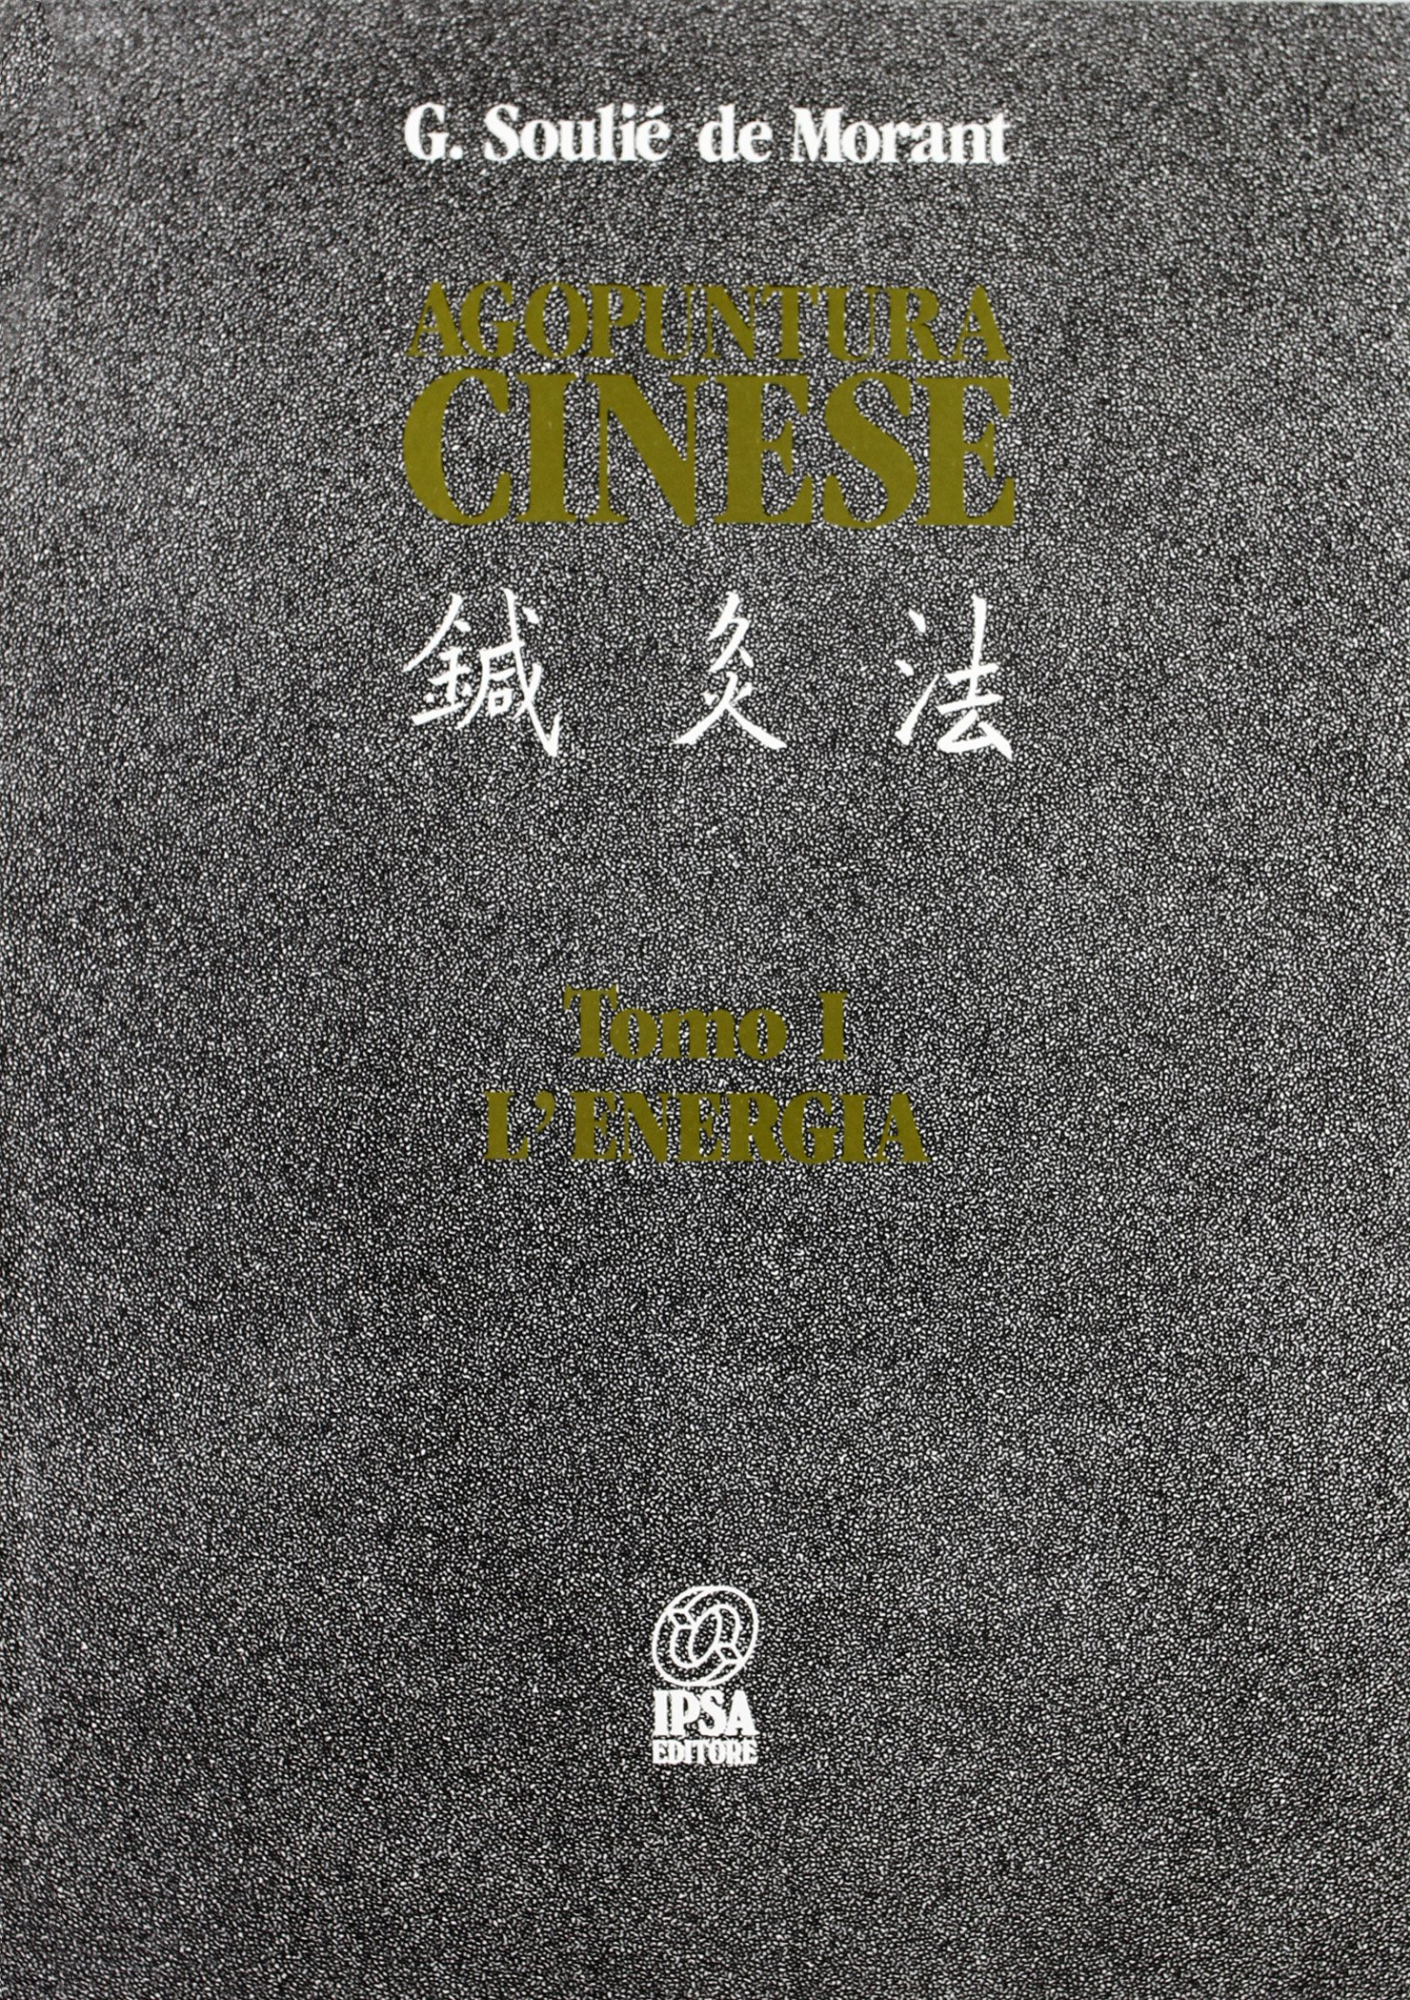 Libri Soulié de Morant George - Agopuntura Cinese Vol 01 NUOVO SIGILLATO, EDIZIONE DEL 01/02/1988 SUBITO DISPONIBILE